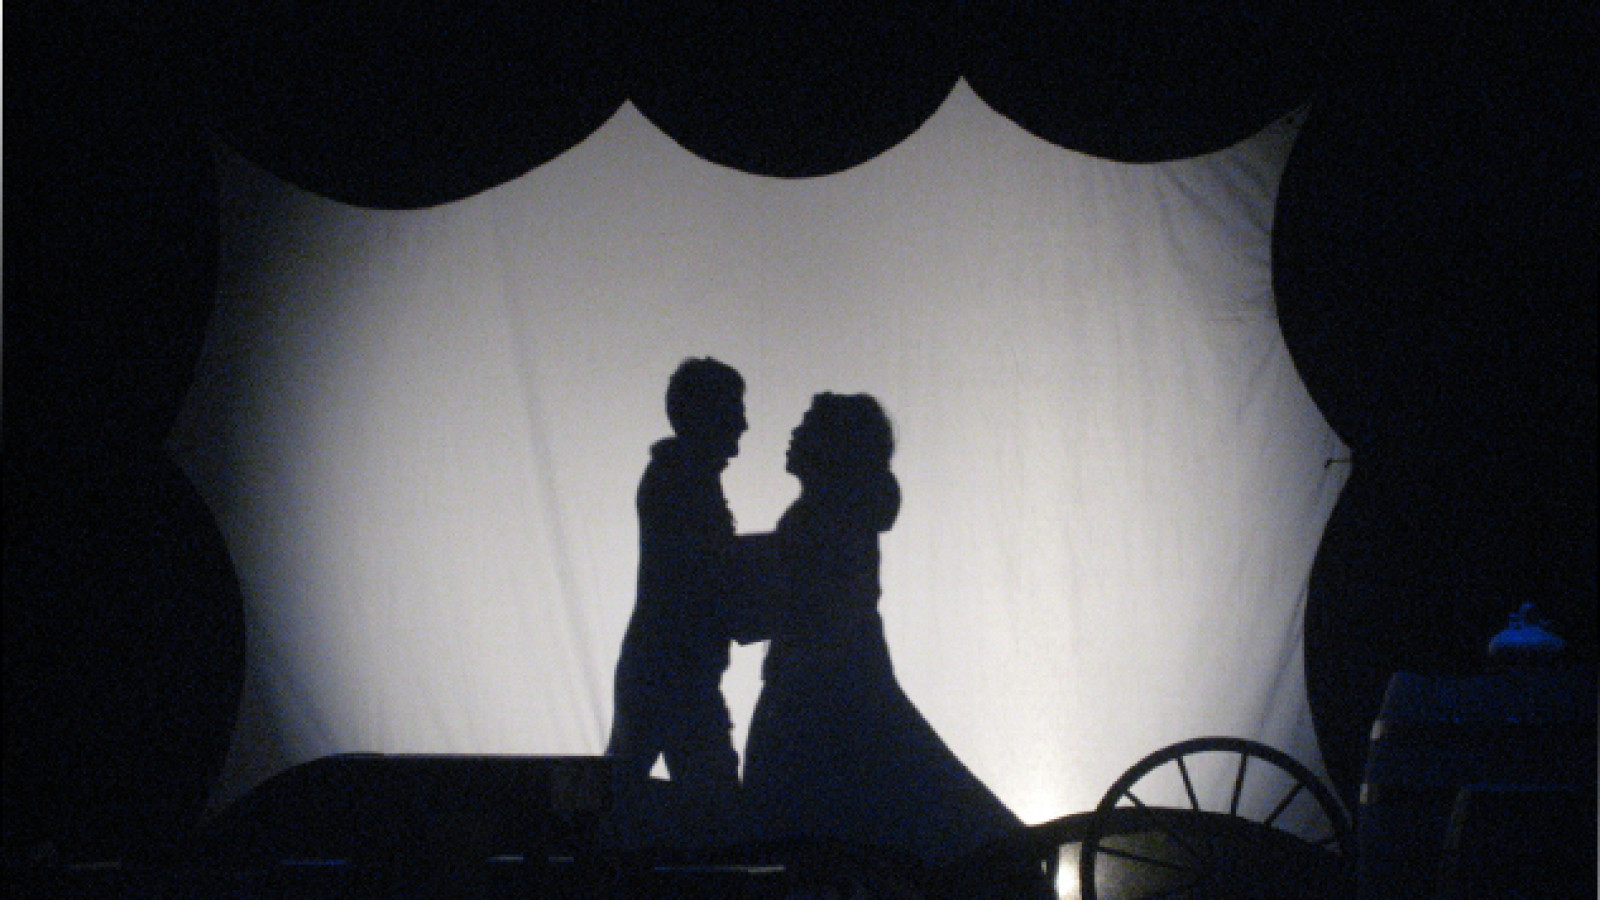 Sombras de amor prohibido, de Orozú Teatro